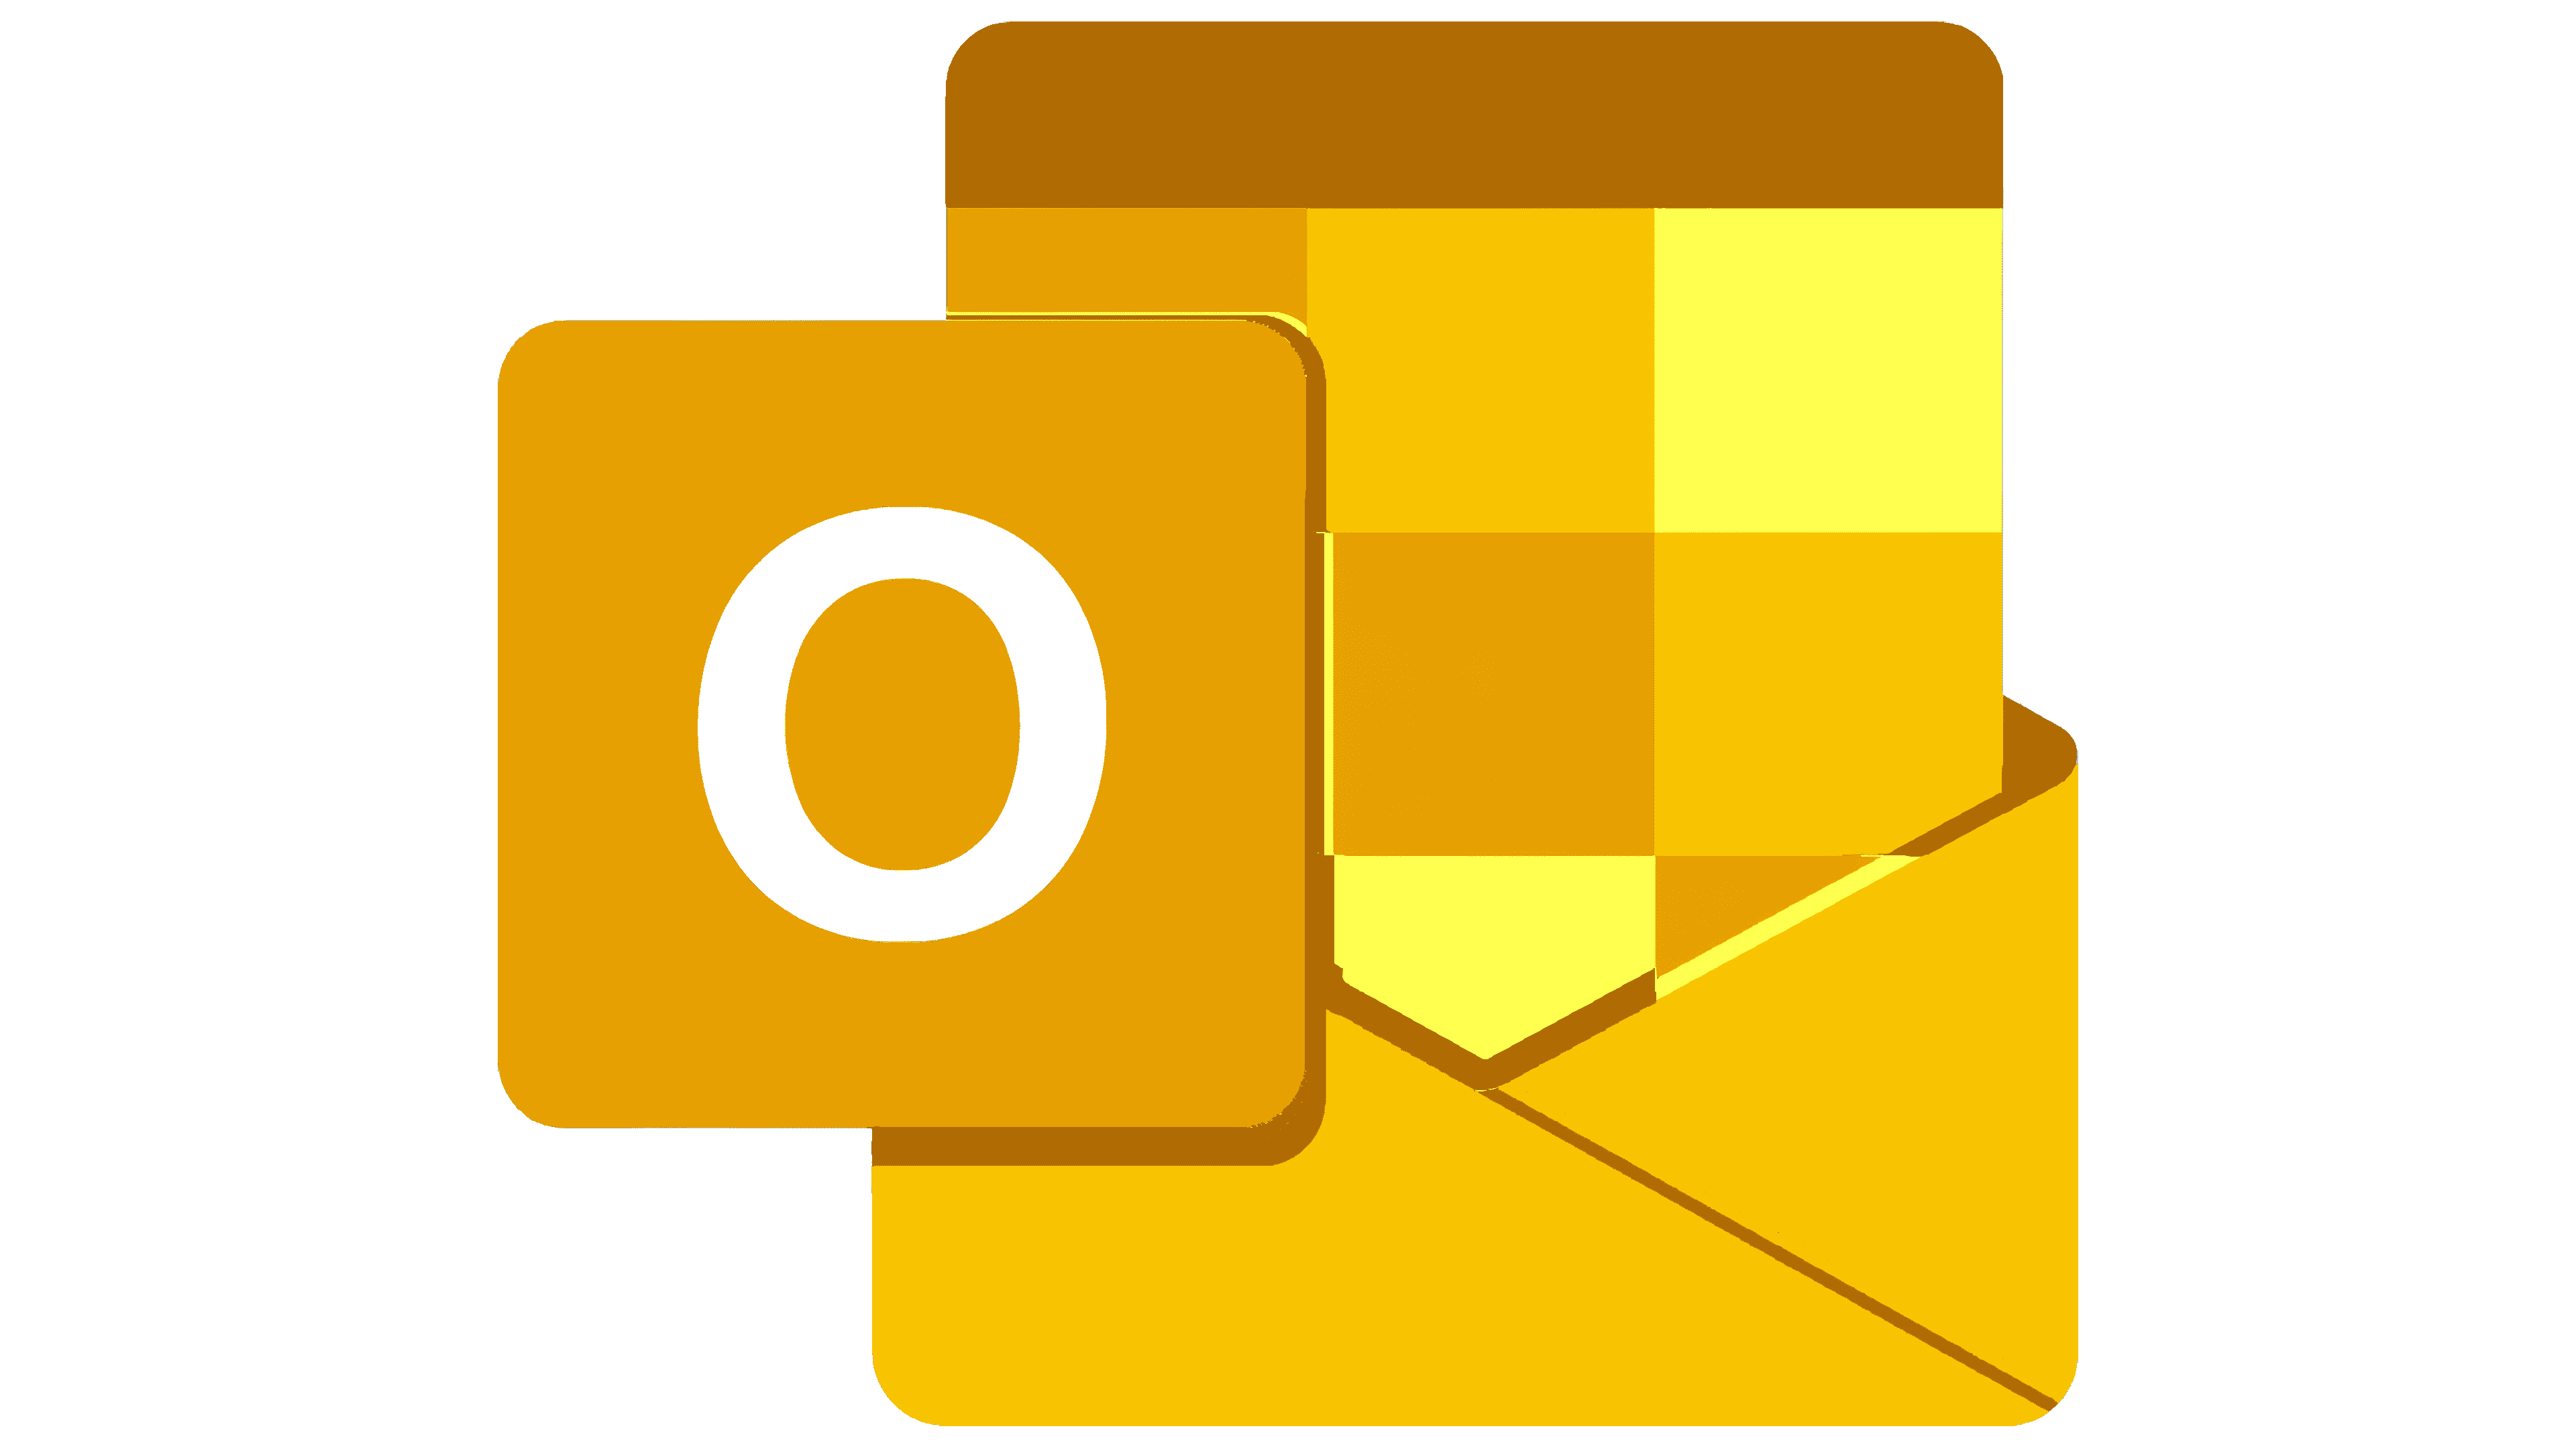 Outlook Logo : histoire, signification de l'emblème